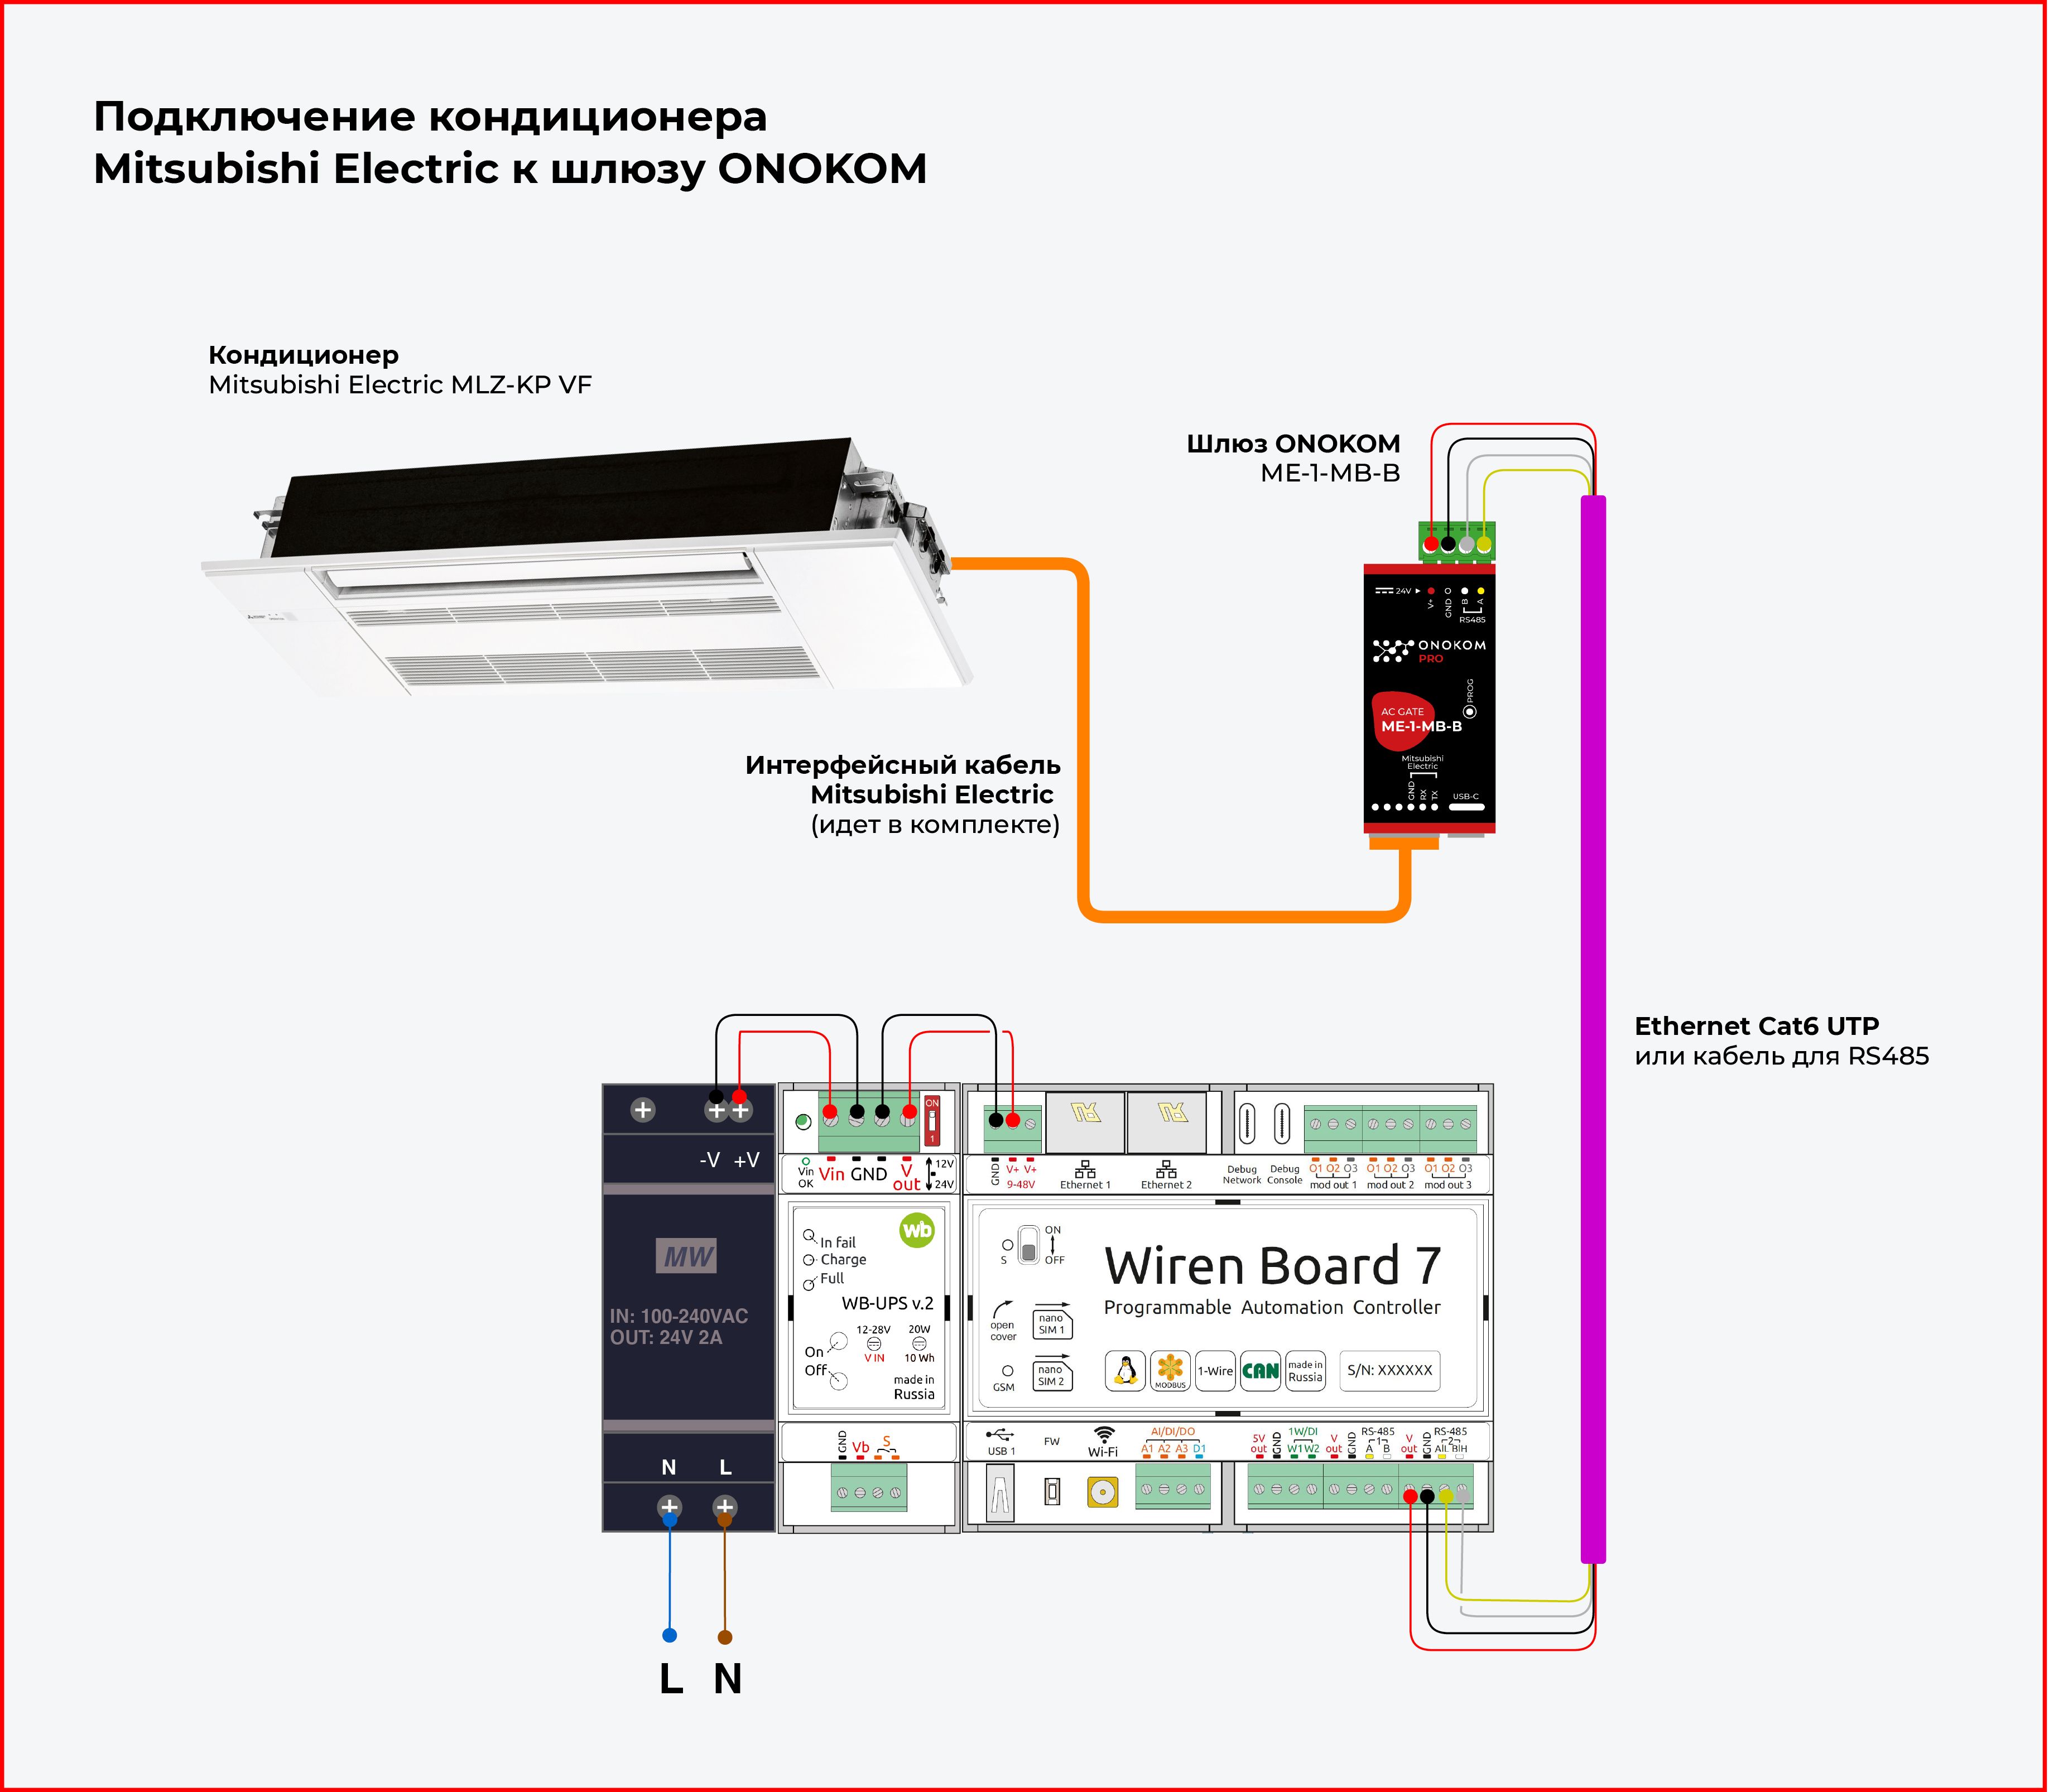 Схема подключения кондиционера Mitsubishi Electric Design Inverter EF MSZ-EF25VGKW к контроллеру WirenBoard через шлюз ONOKOM ME-1-MB-B